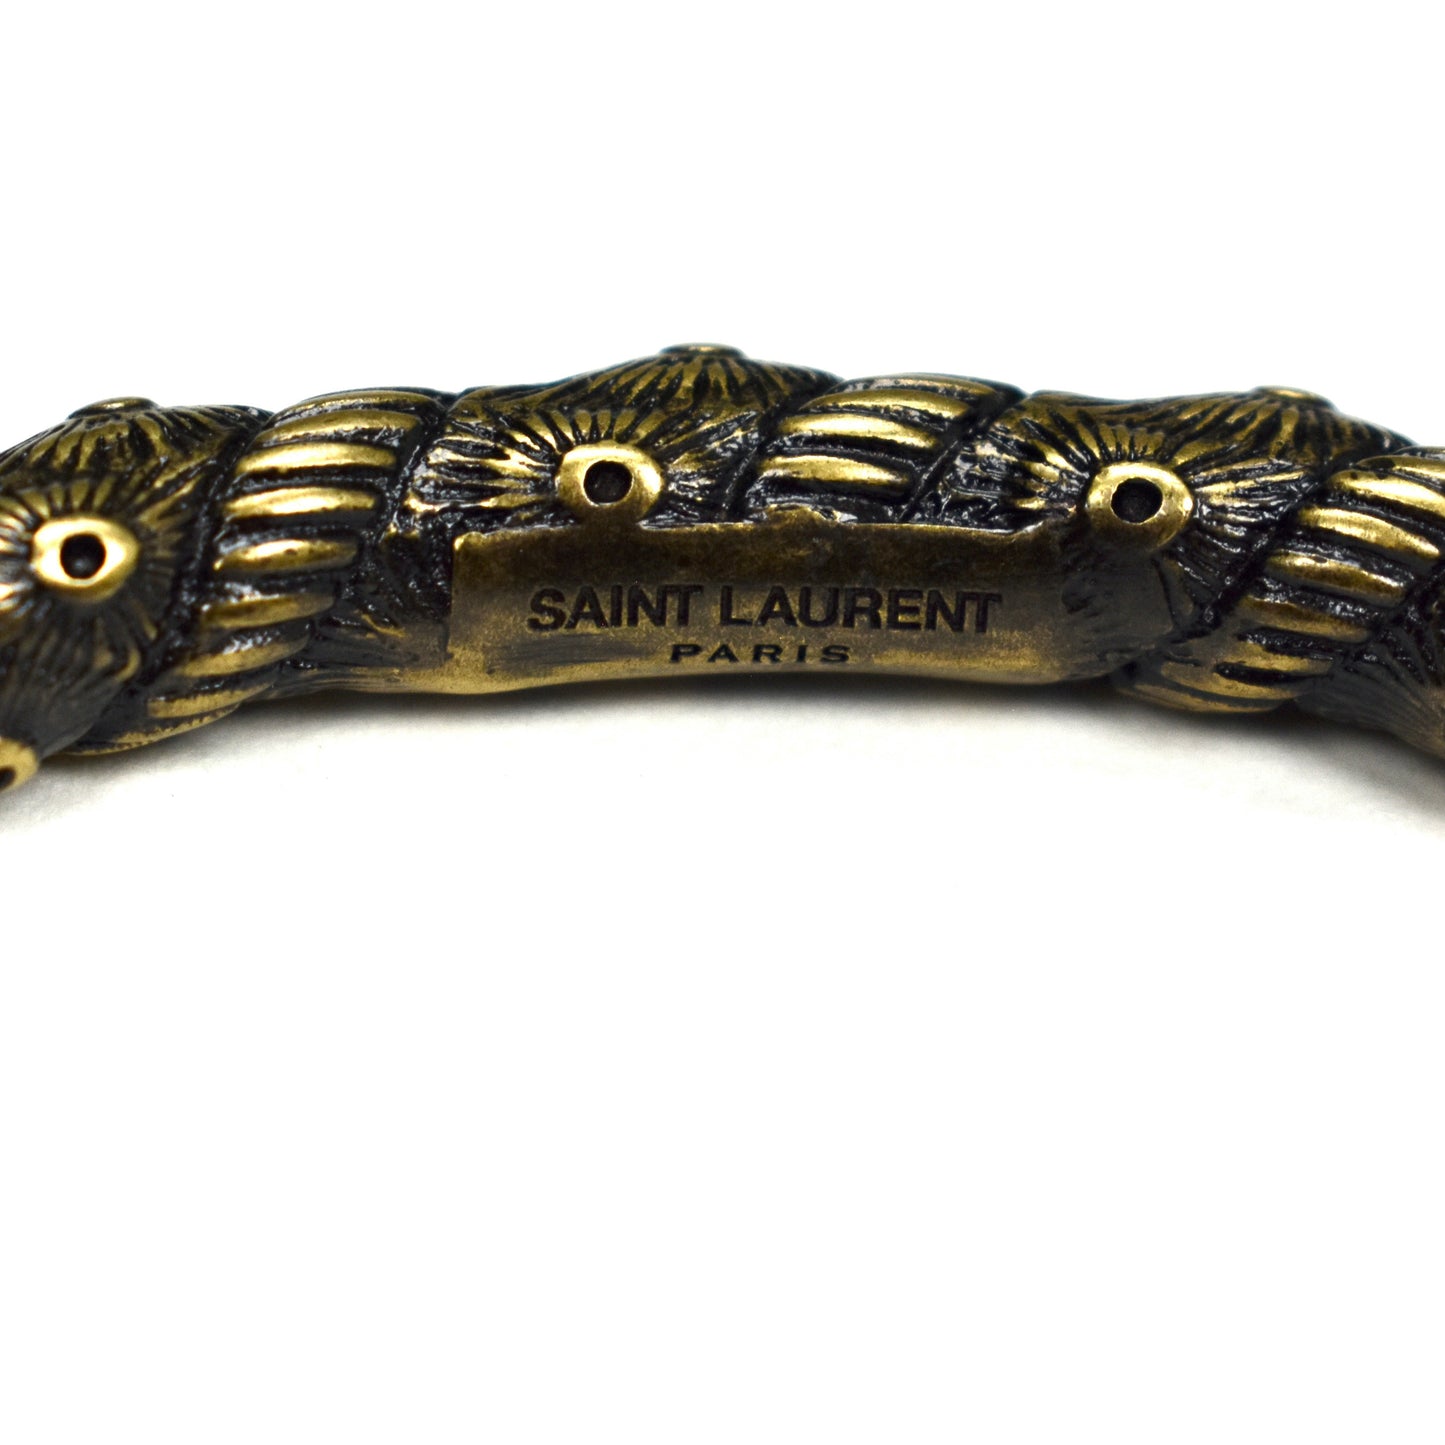 Saint Laurent - Western Engraved Bangle Bracelet